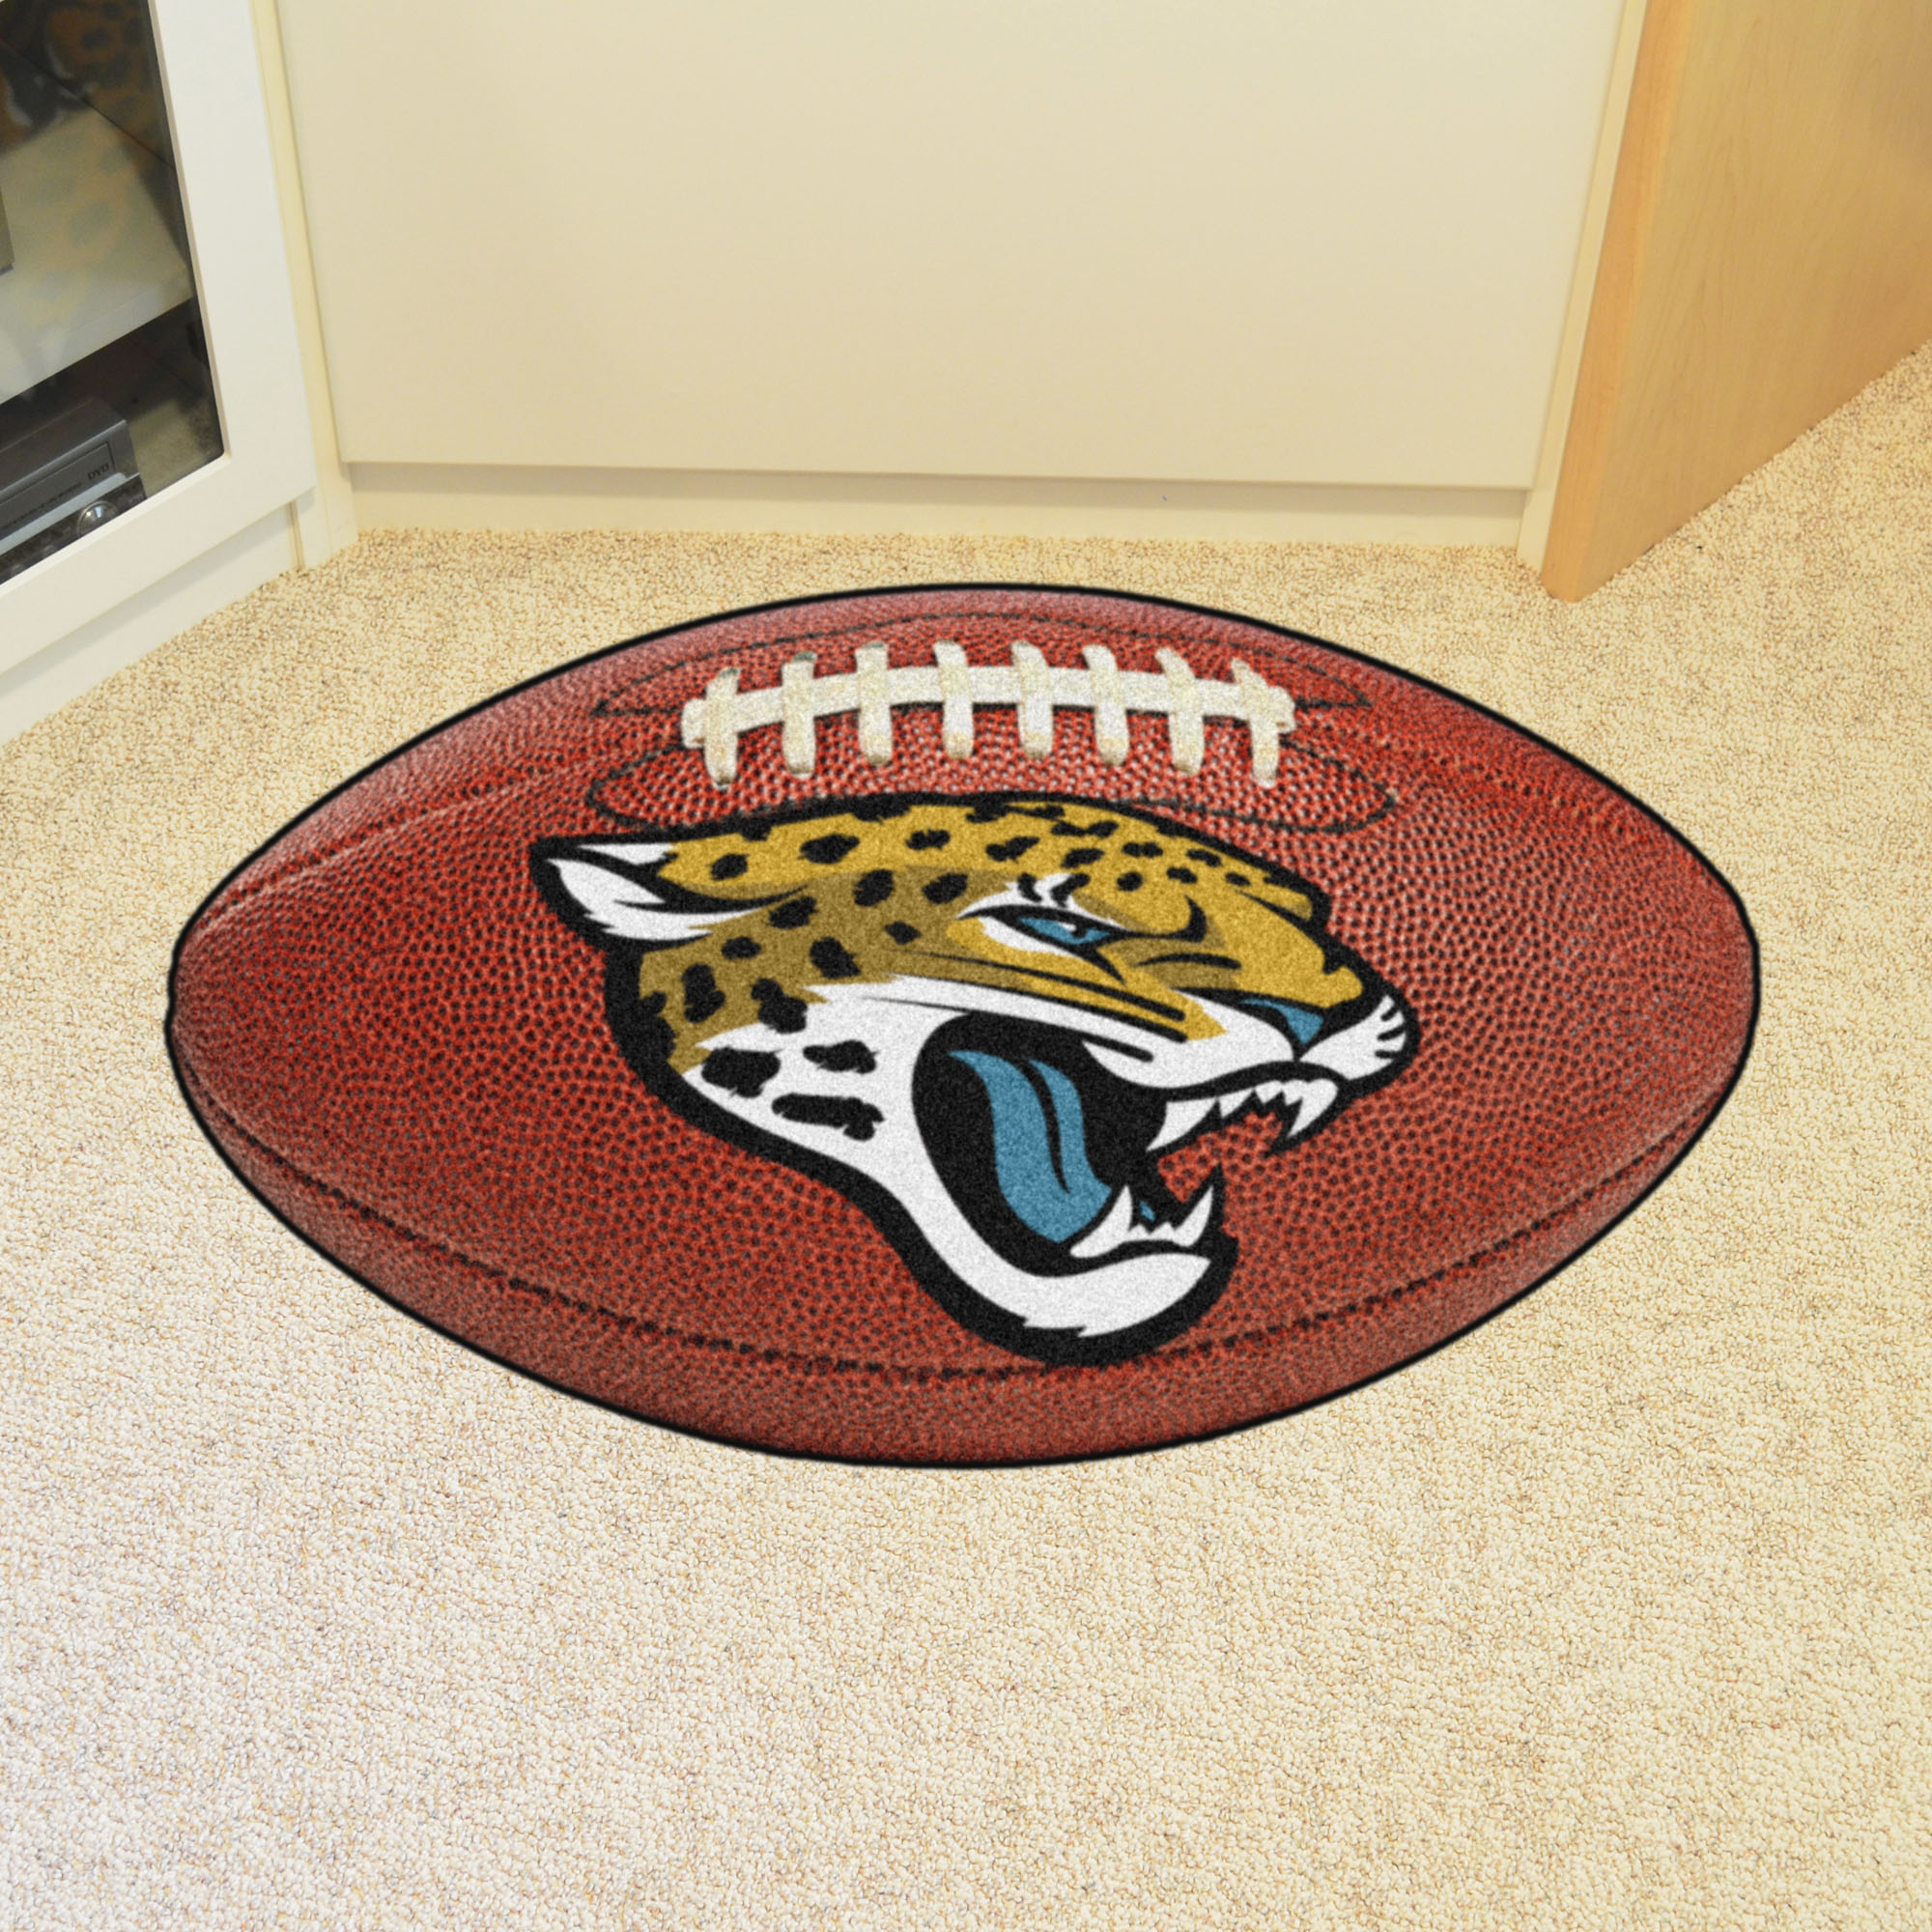 Jacksonville Jaguars Ball Shaped Area Rugs